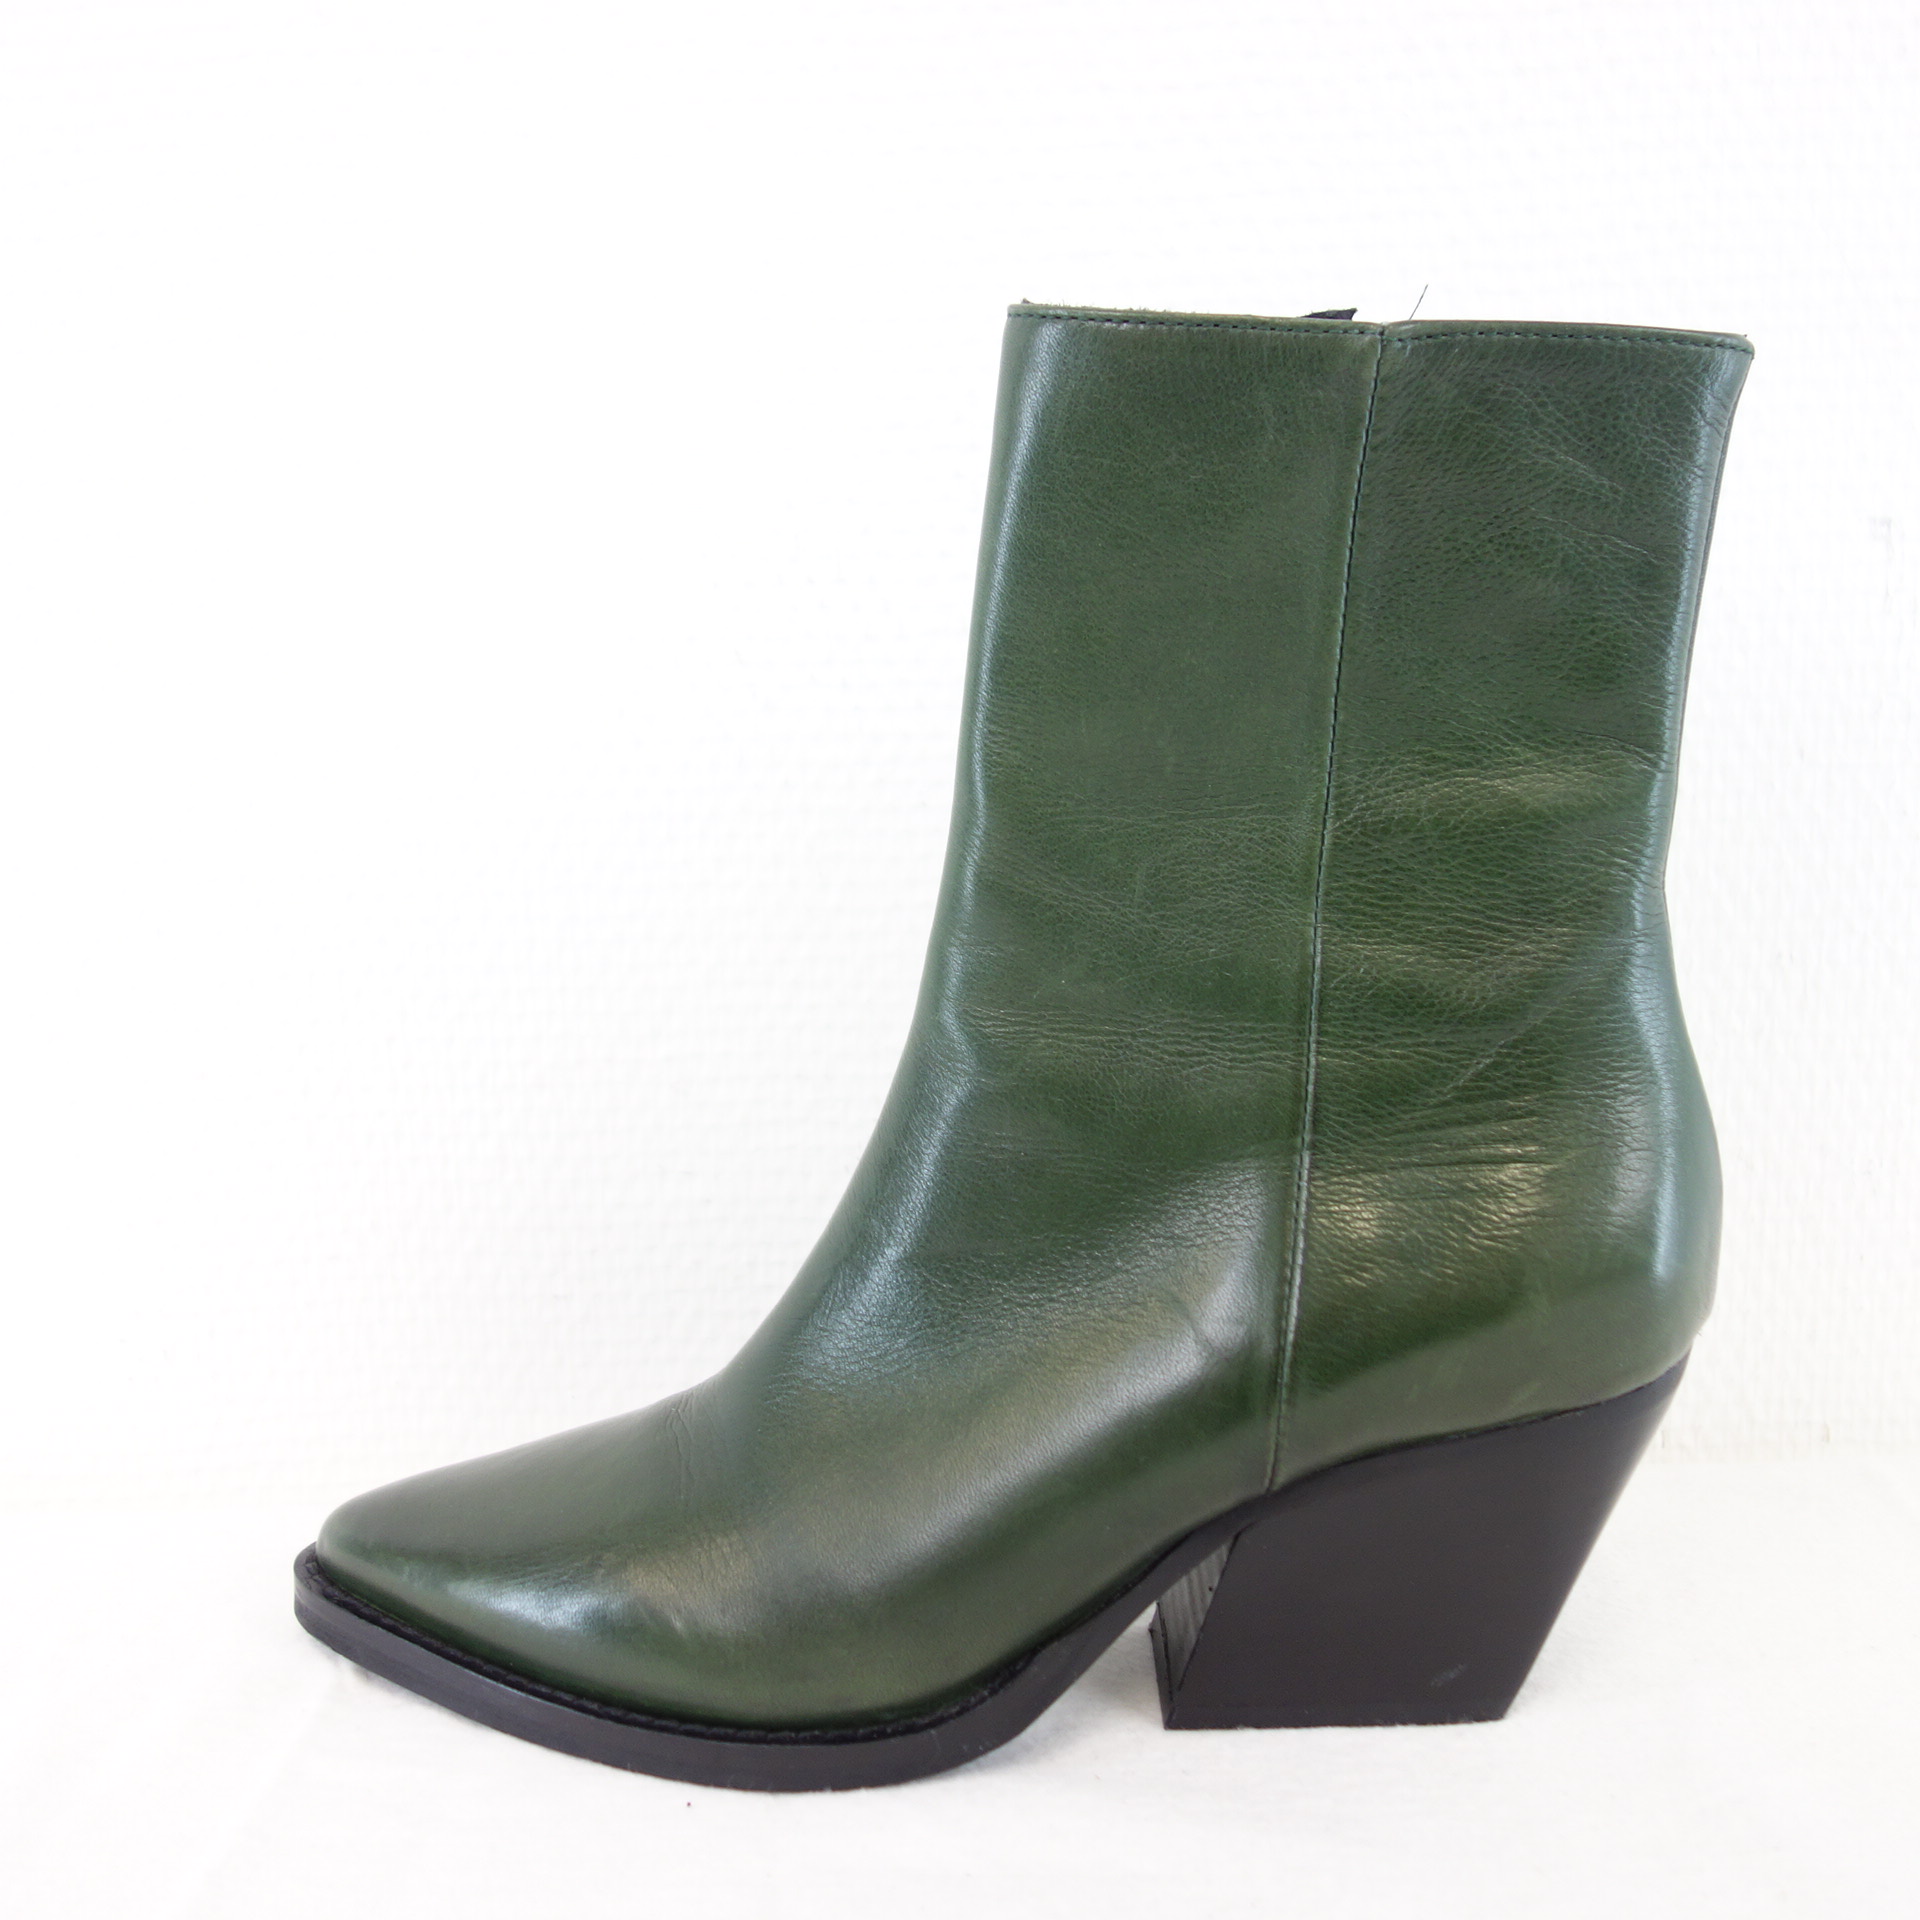 BUKELA Dänemark Damen Schuhe Stiefeletten Stiefel Boots Grün Leder Gr 37